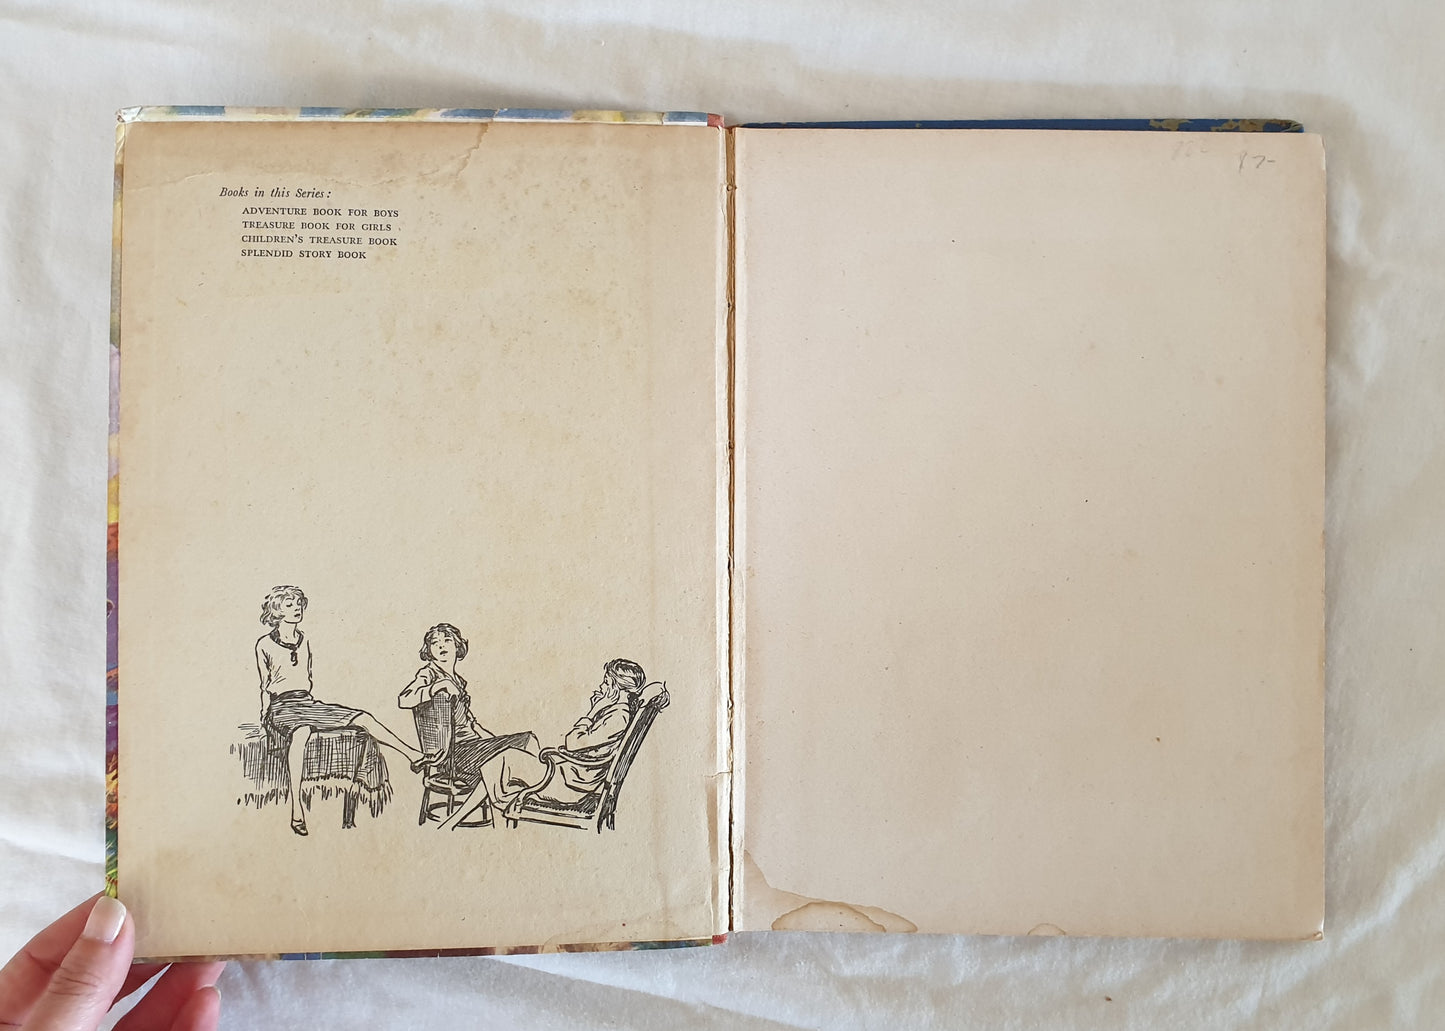 Treasure Book for Girls - The Children's Press